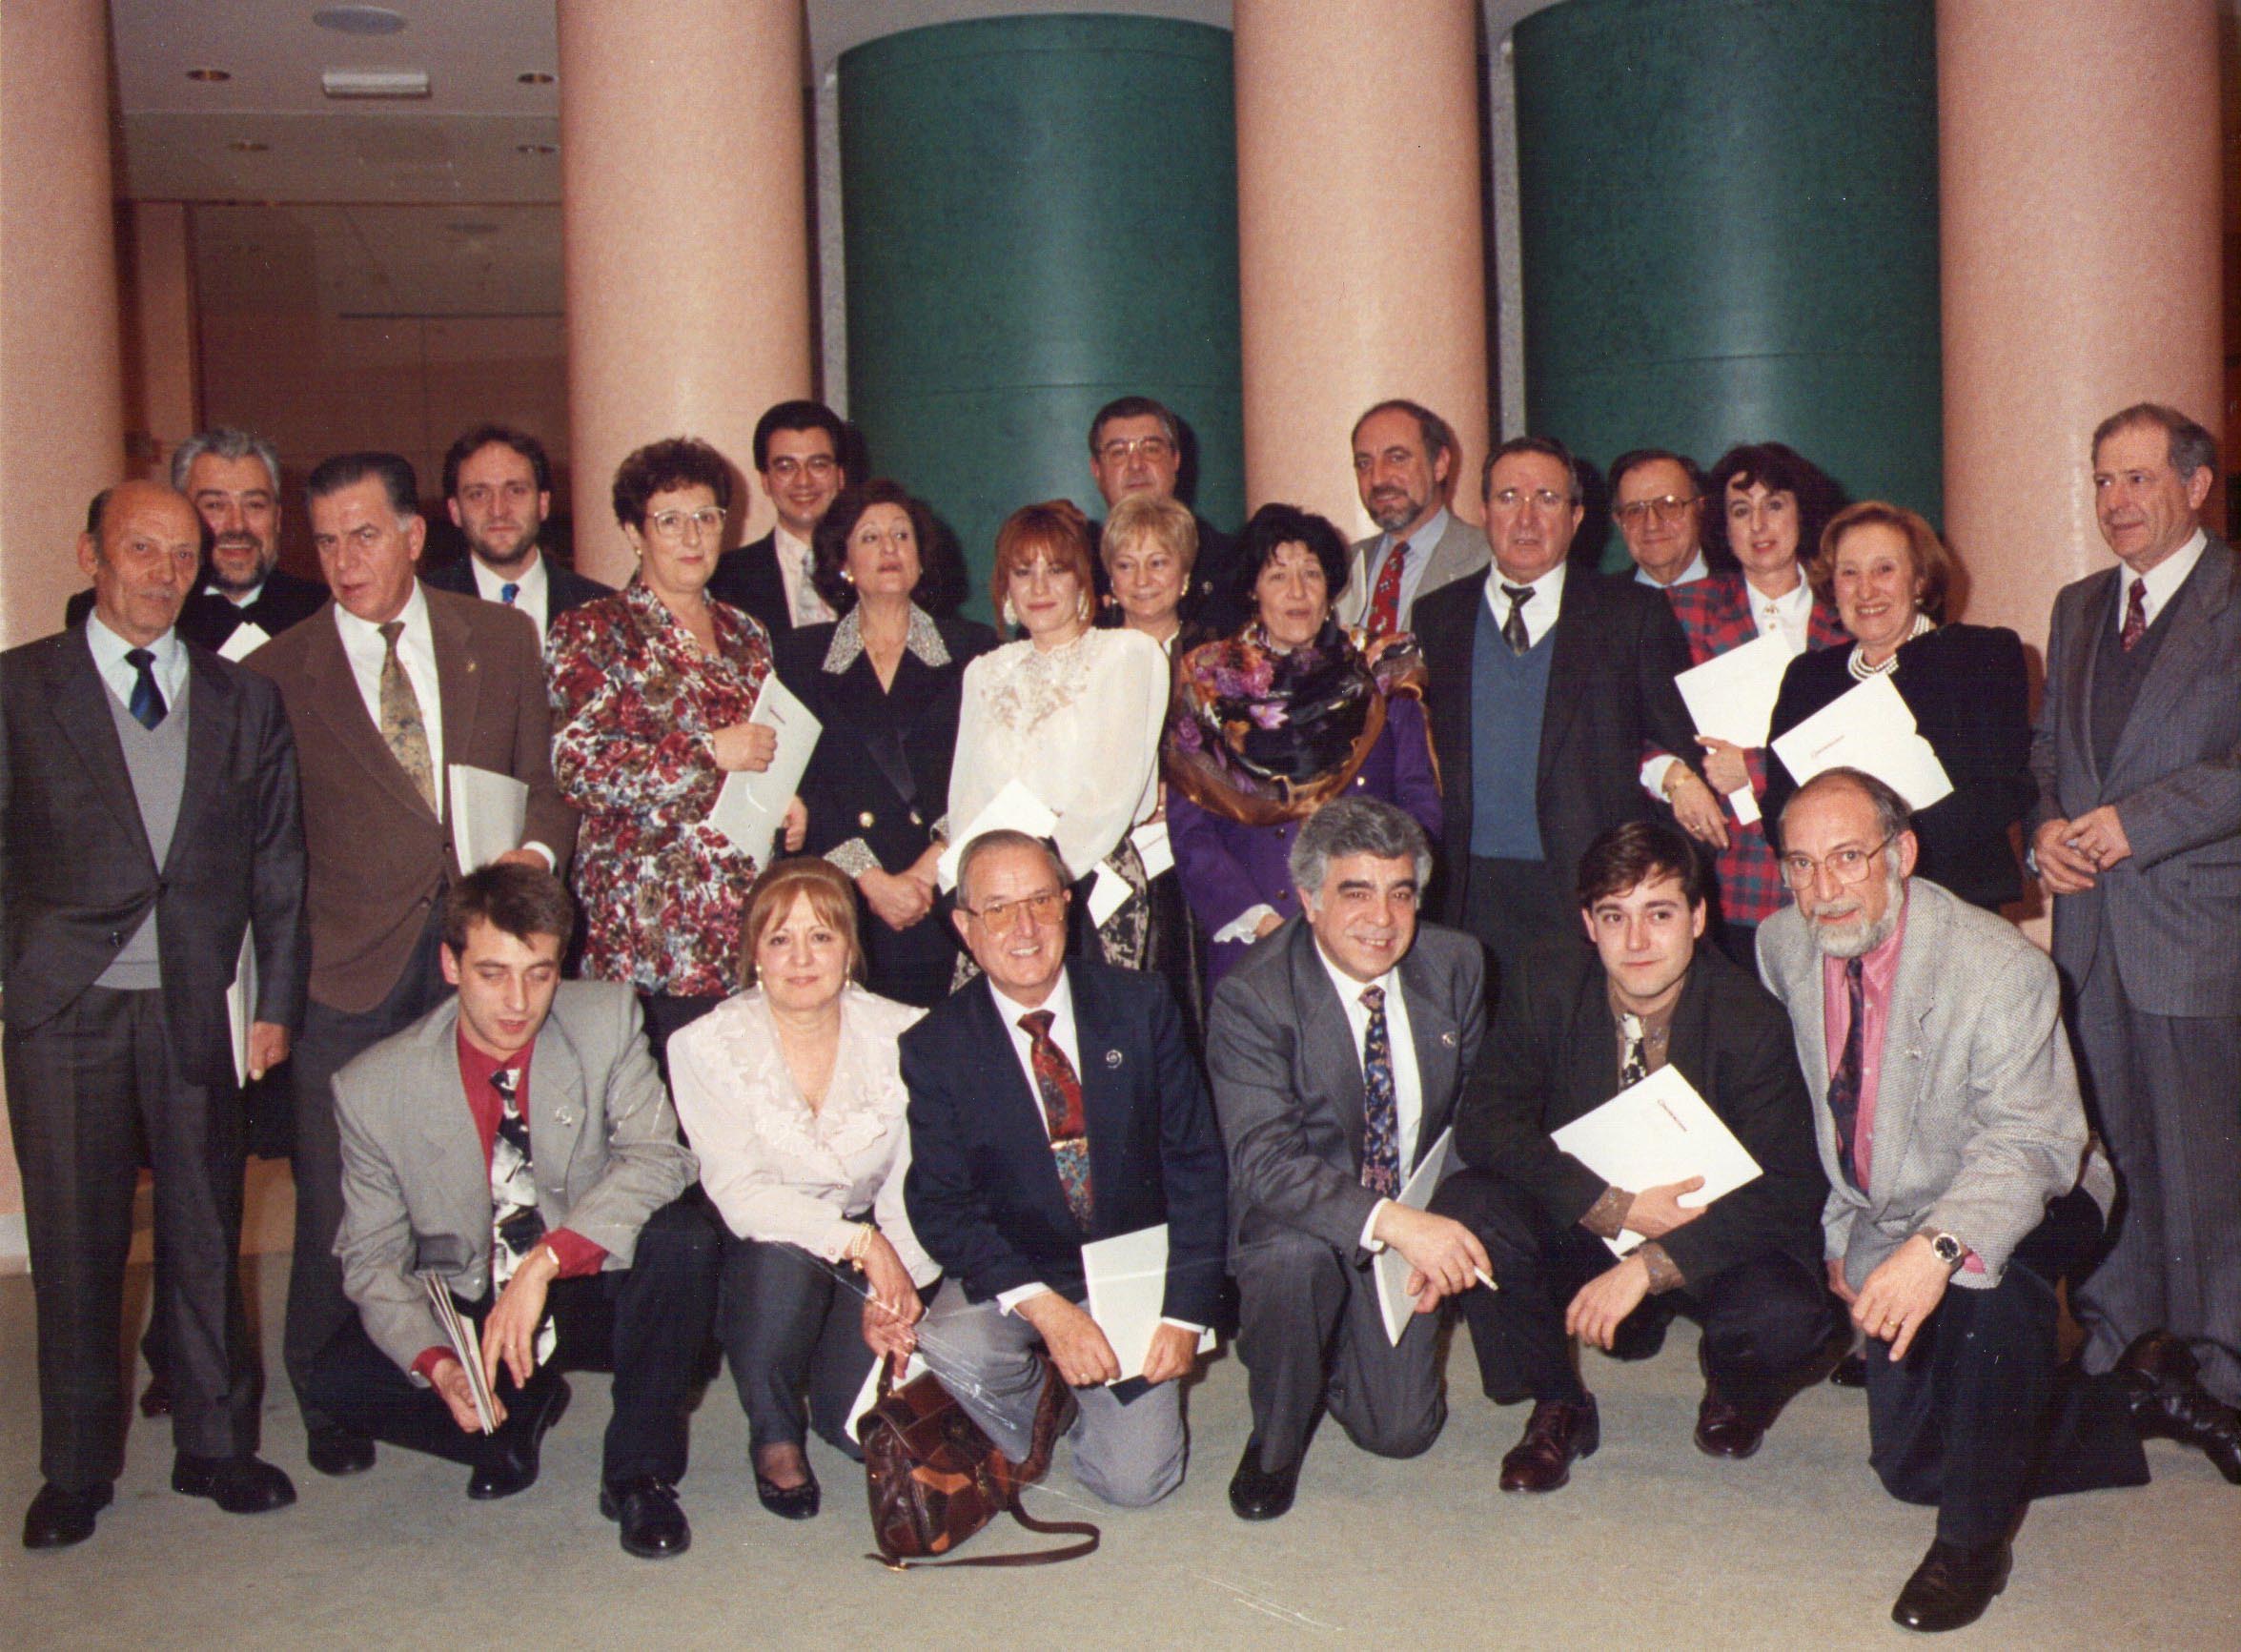 Quadre de Veus meeting in 1990